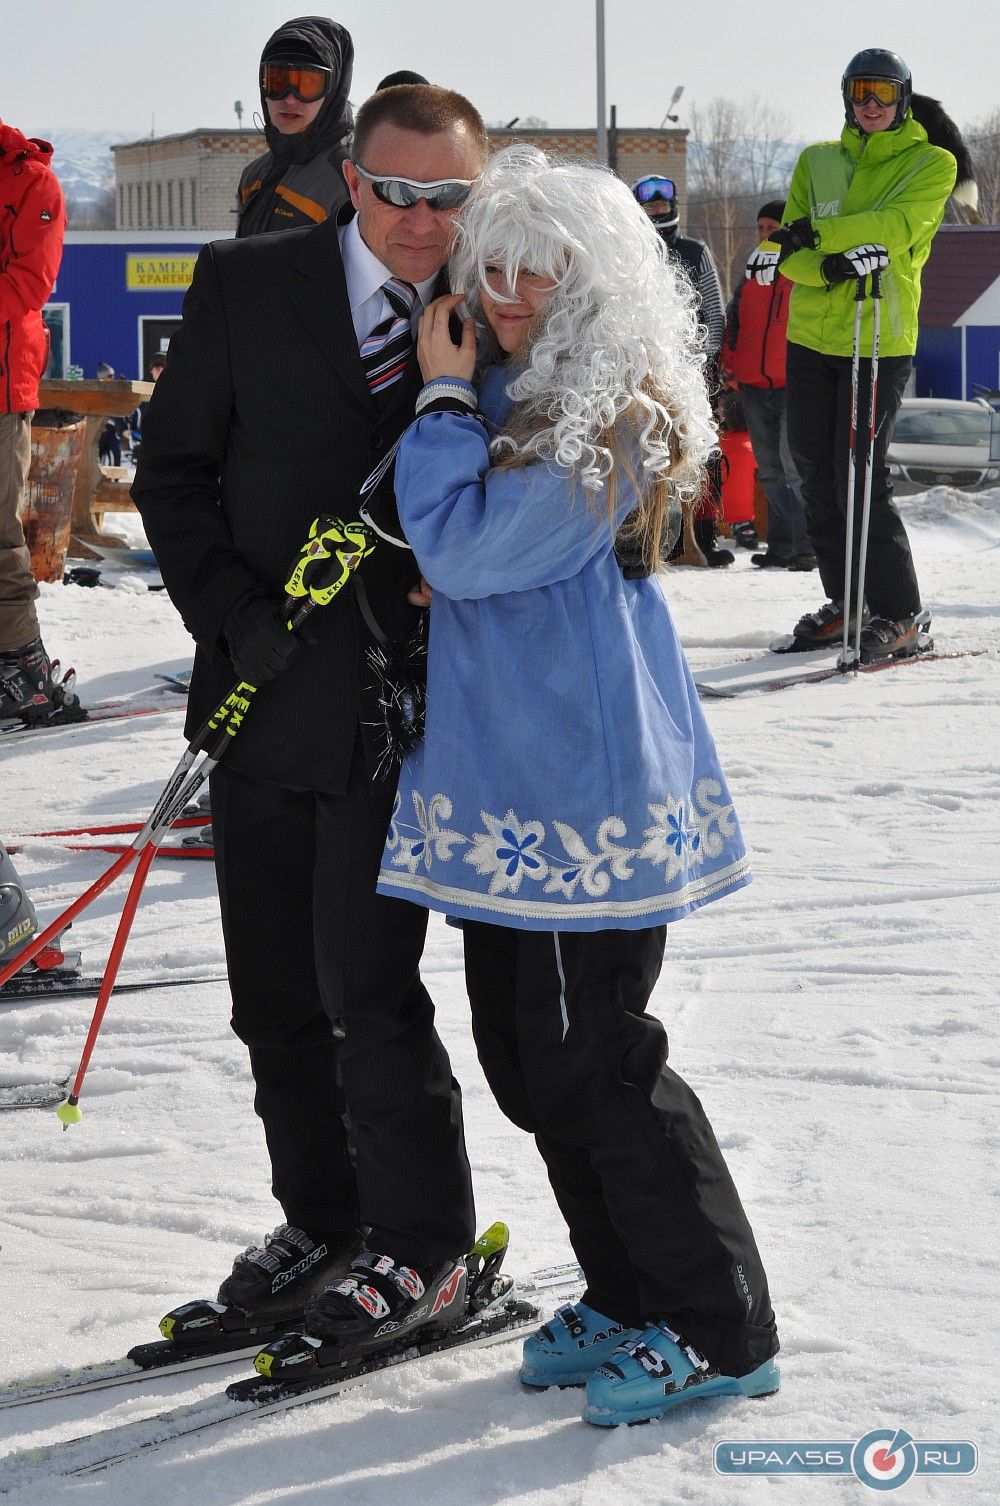 Горнолыжно-сноубордический карнавал в Кувандыке, 30.03.2013